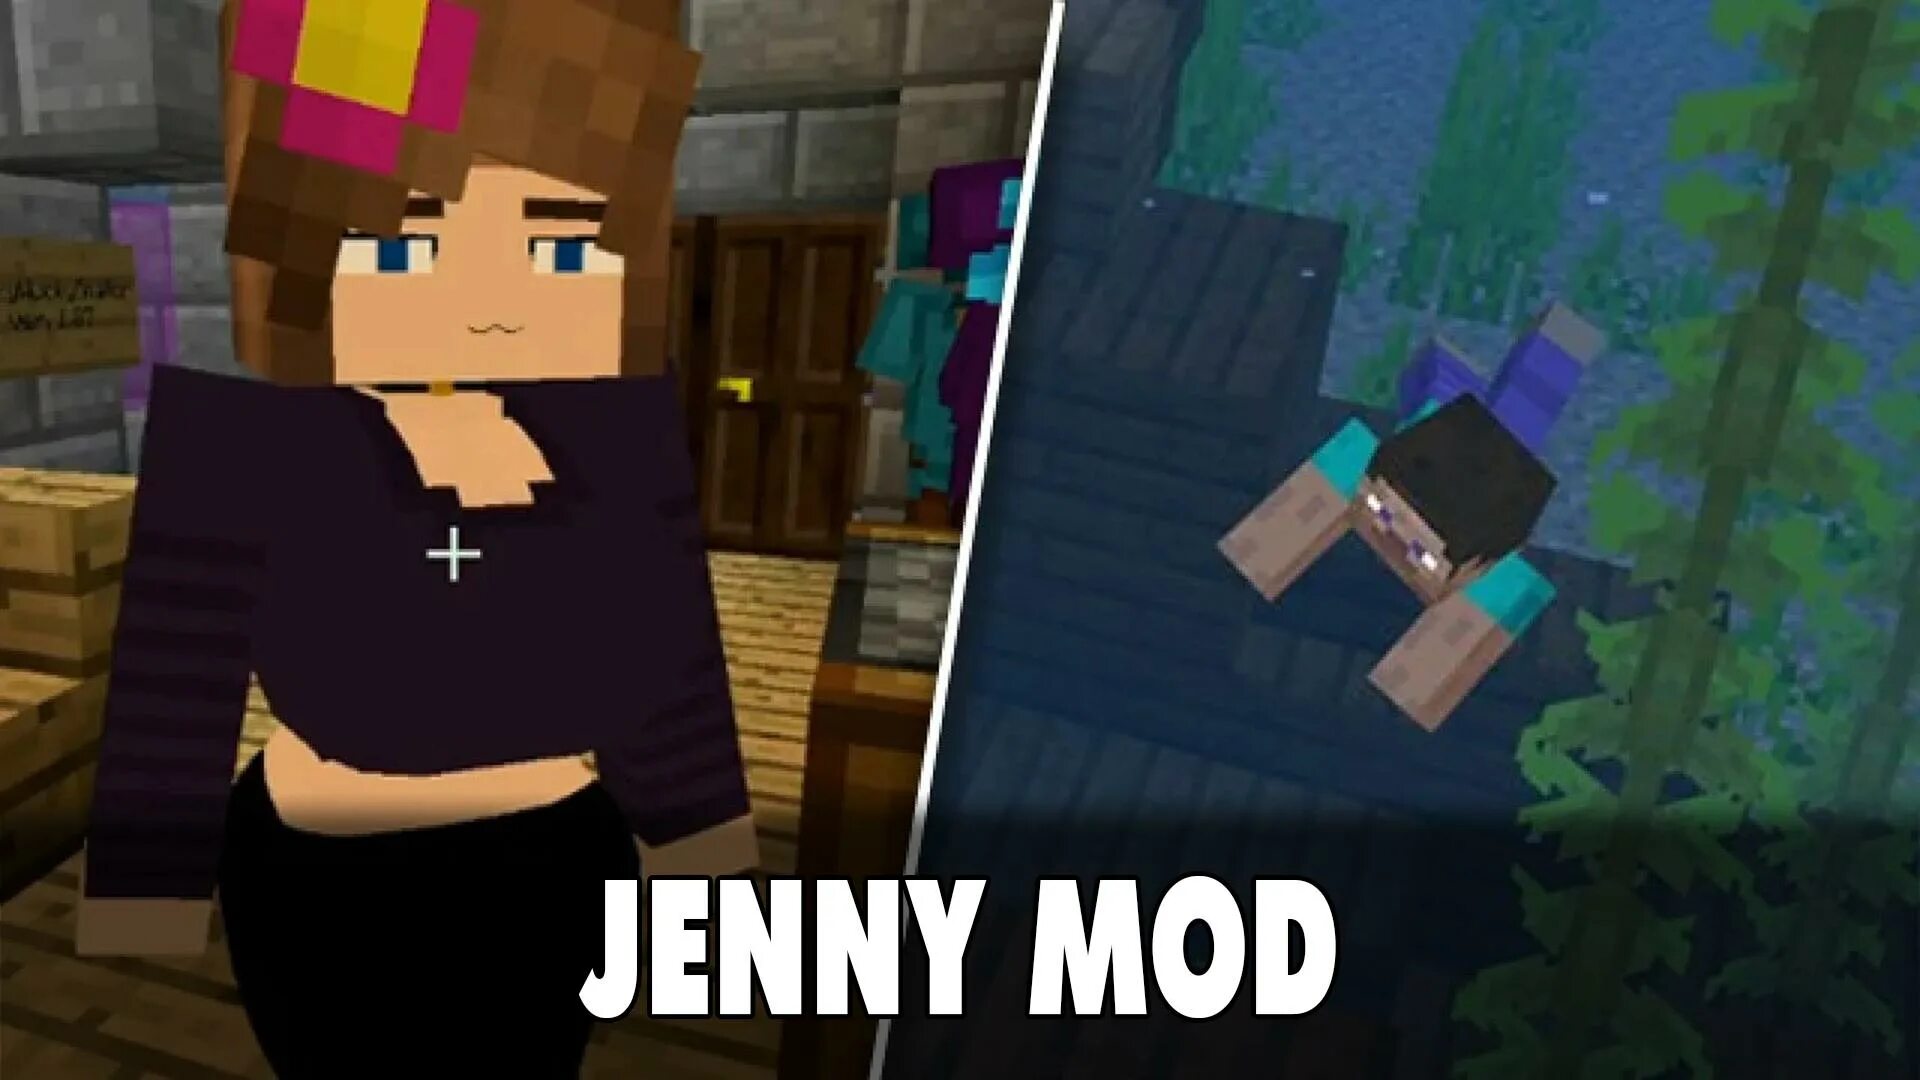 Майнкрафт дженни без цензуры. Дженни мод 1.12. Minecraft Jenny Mod Дженни. Дженни мод 1.5.2. Jenny Mod Ellie майнкрафт.